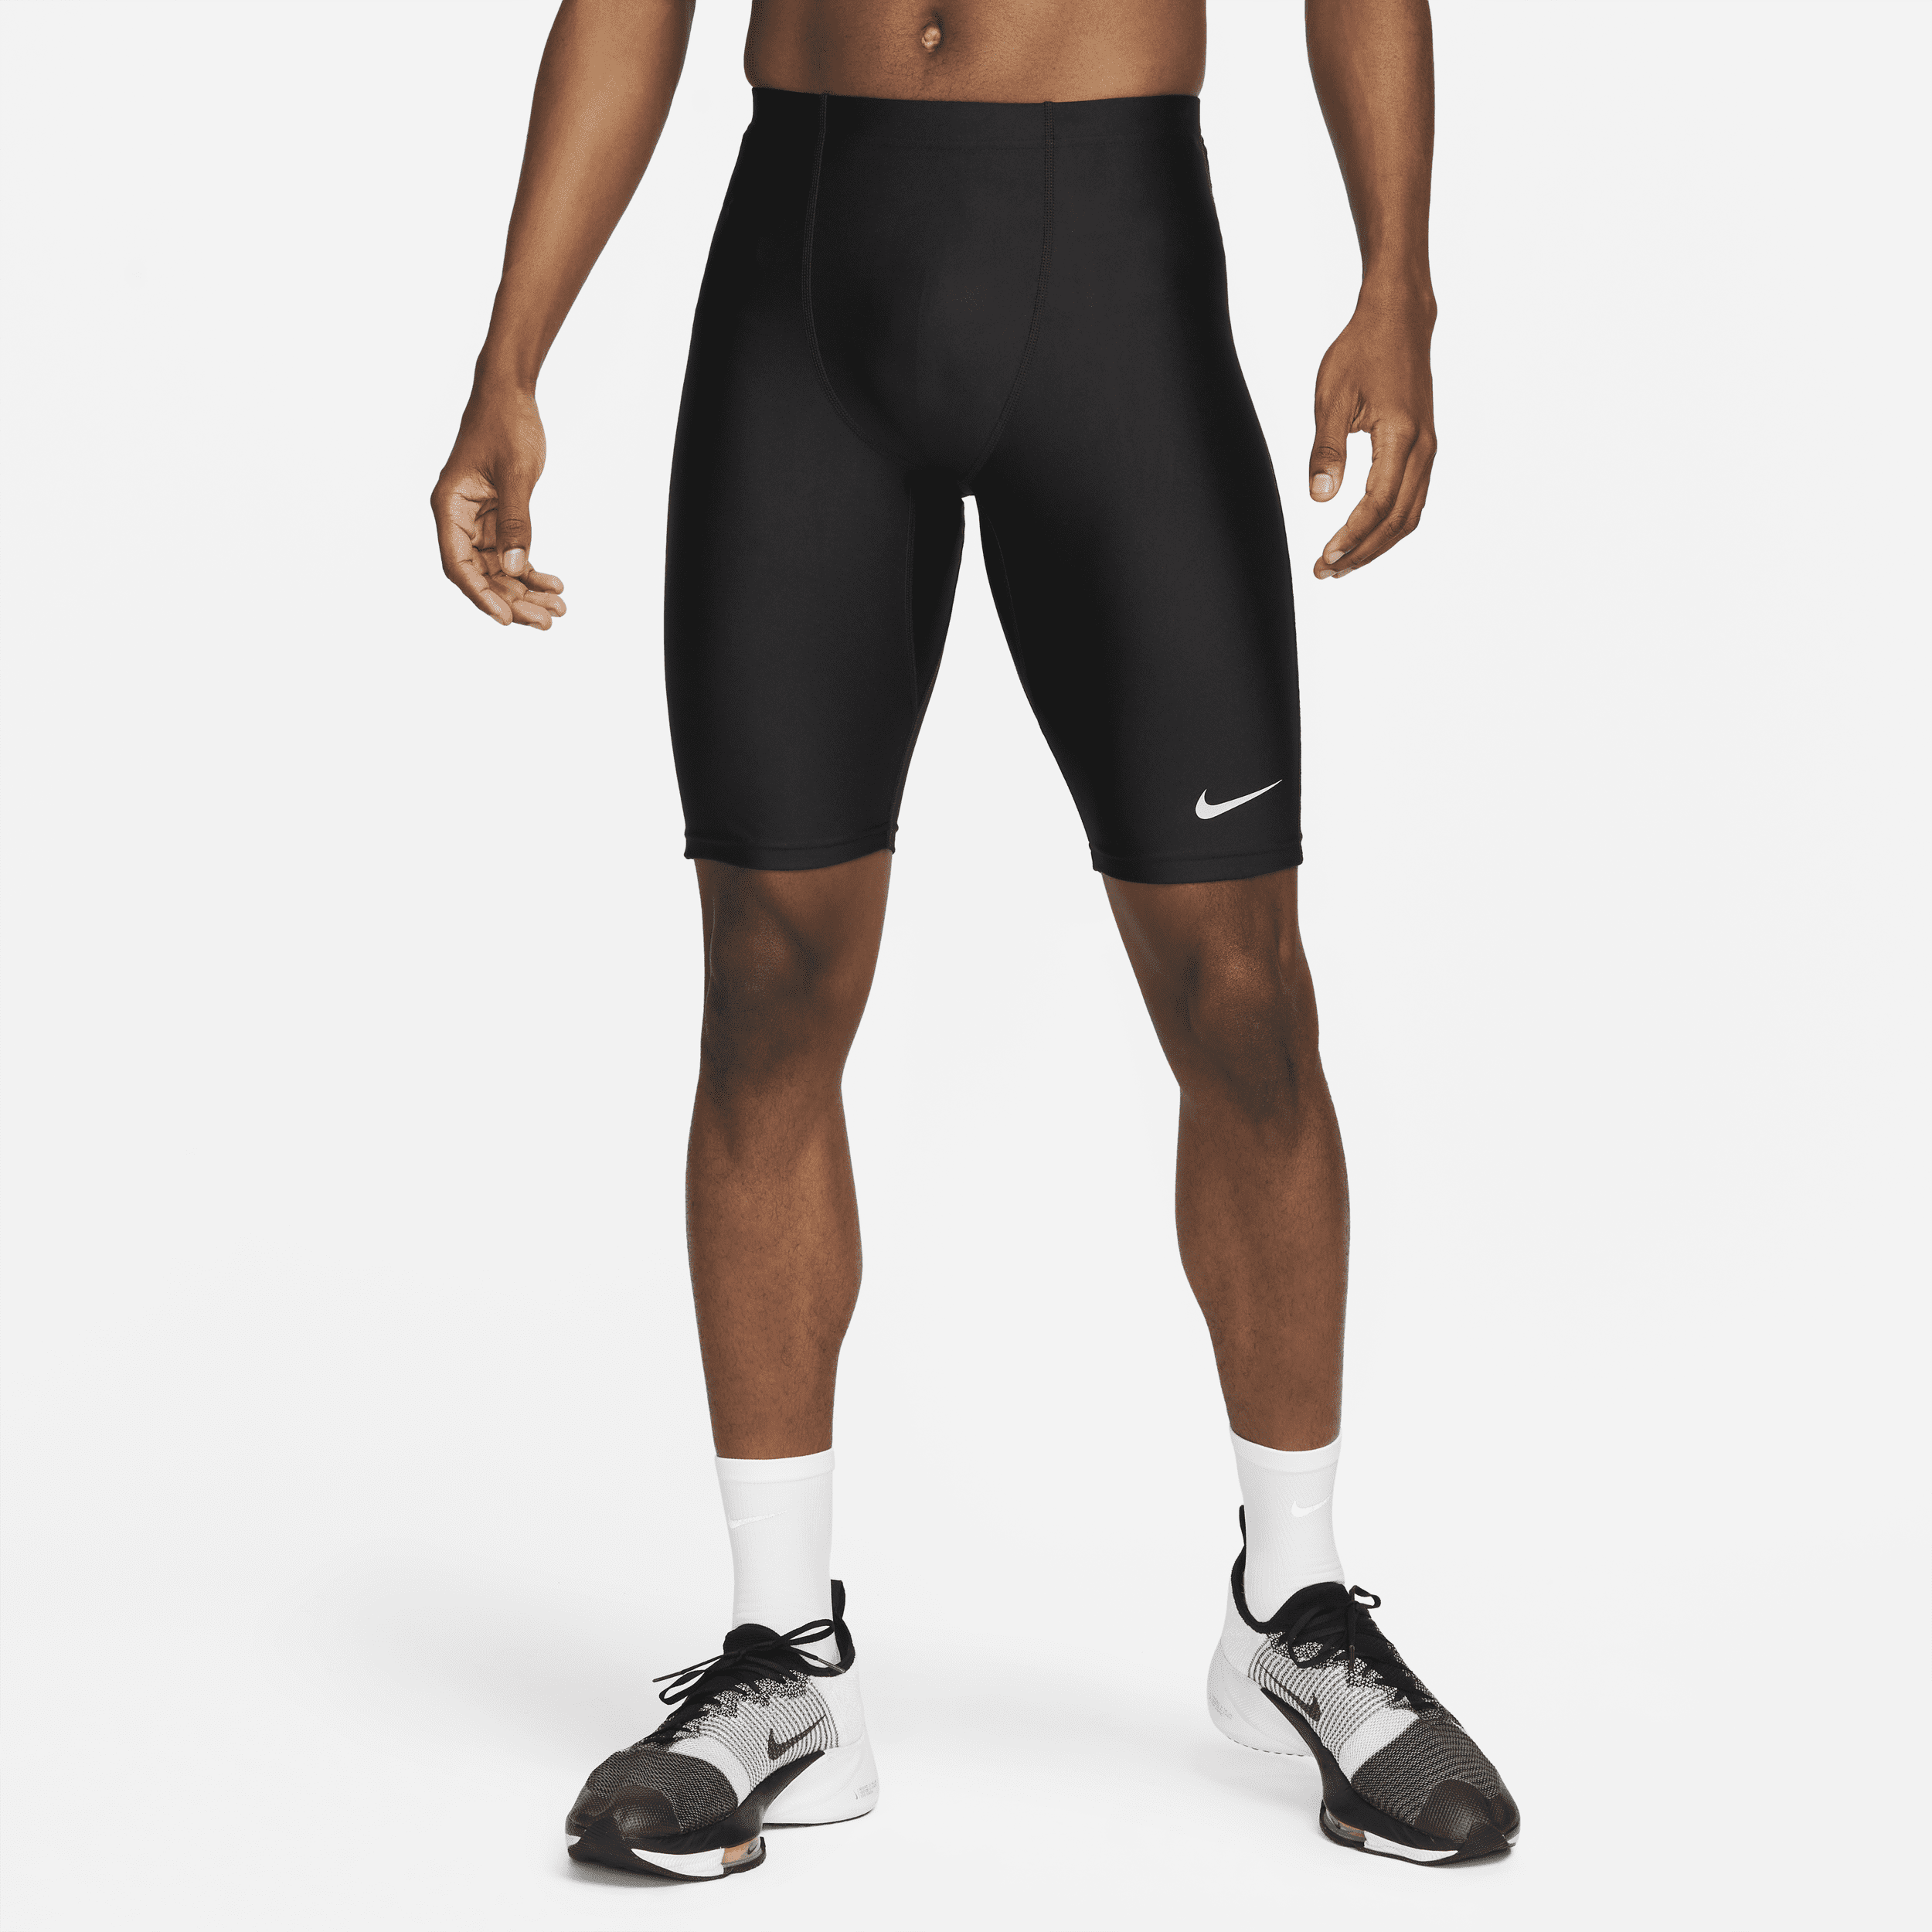 Nike Dri-FIT Fast halflange wedstrijdtights voor heren - Zwart